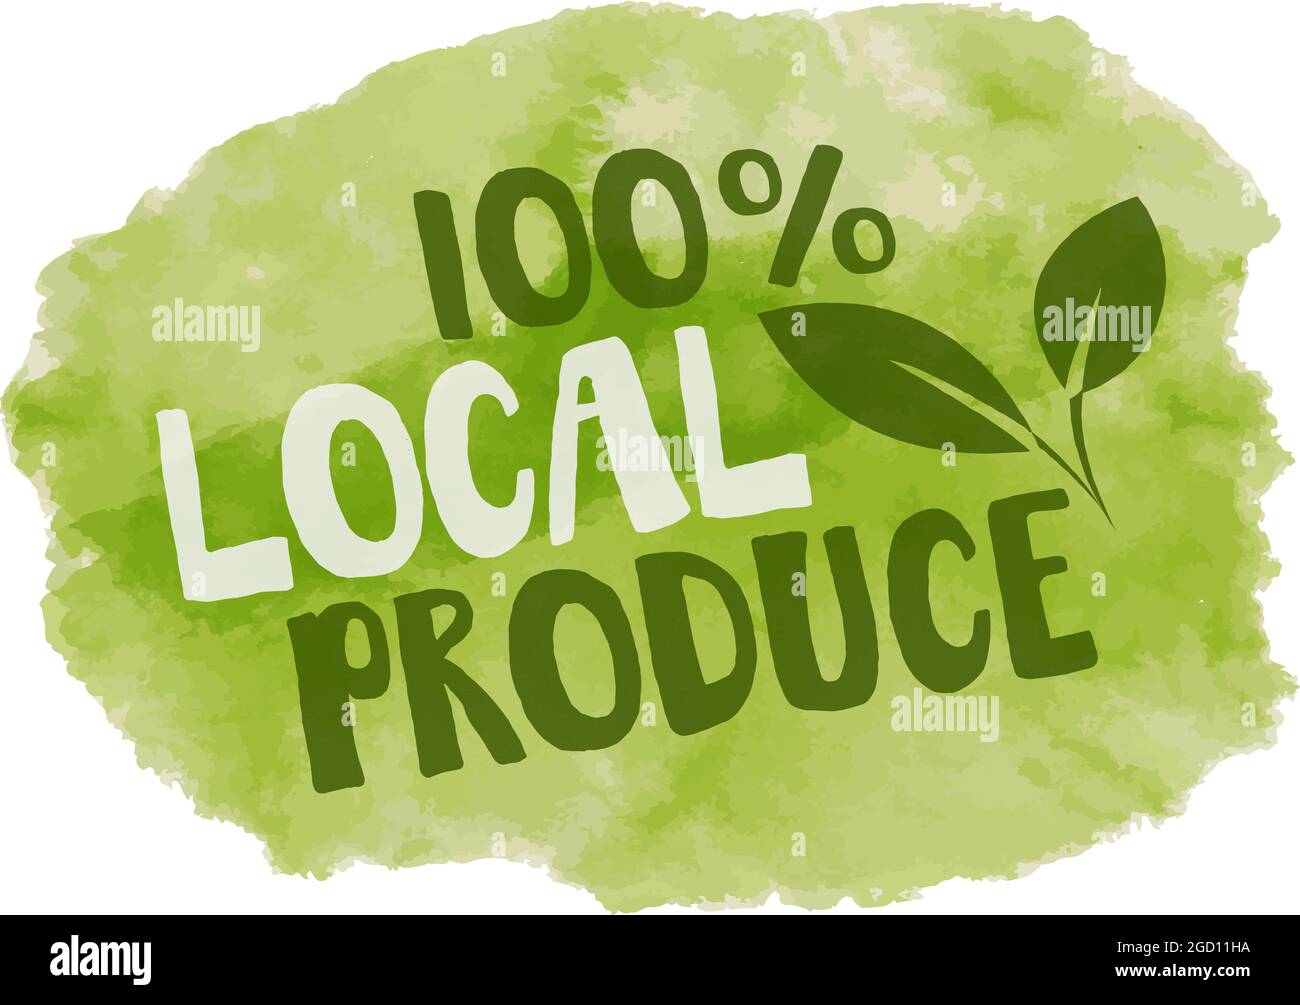 étiquette de produit local à 100 %, illustration vectorielle d'aquarelle verte Illustration de Vecteur